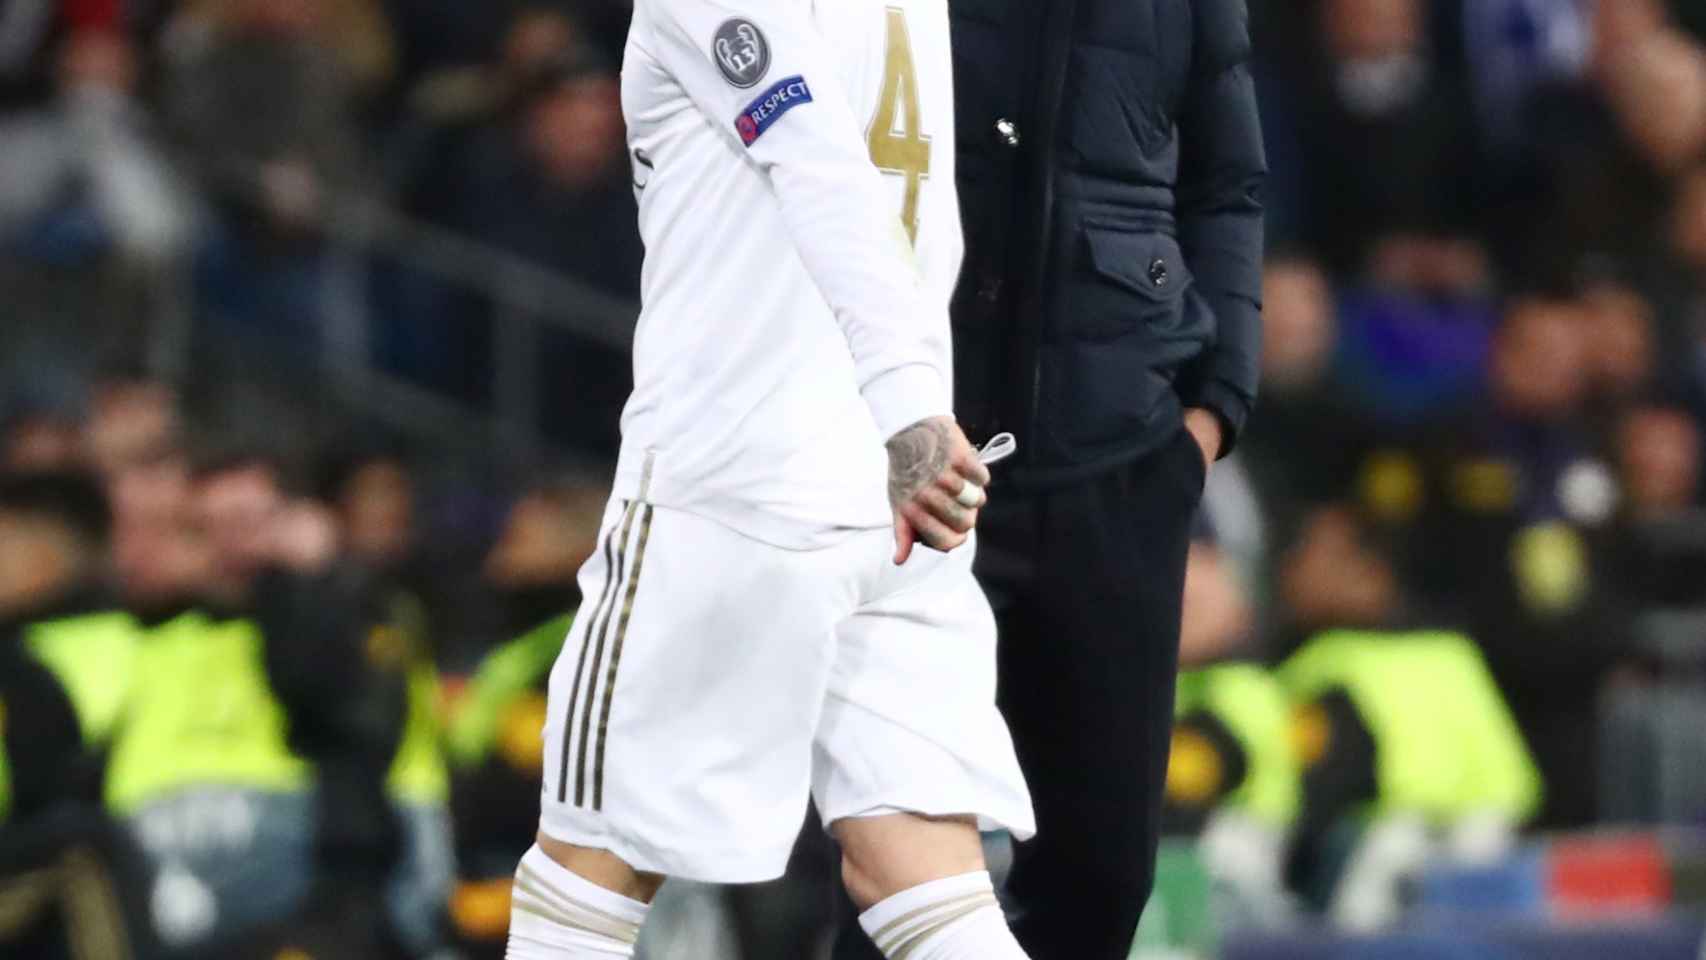 Zidane consuela a Sergio Ramos tras su expulsión